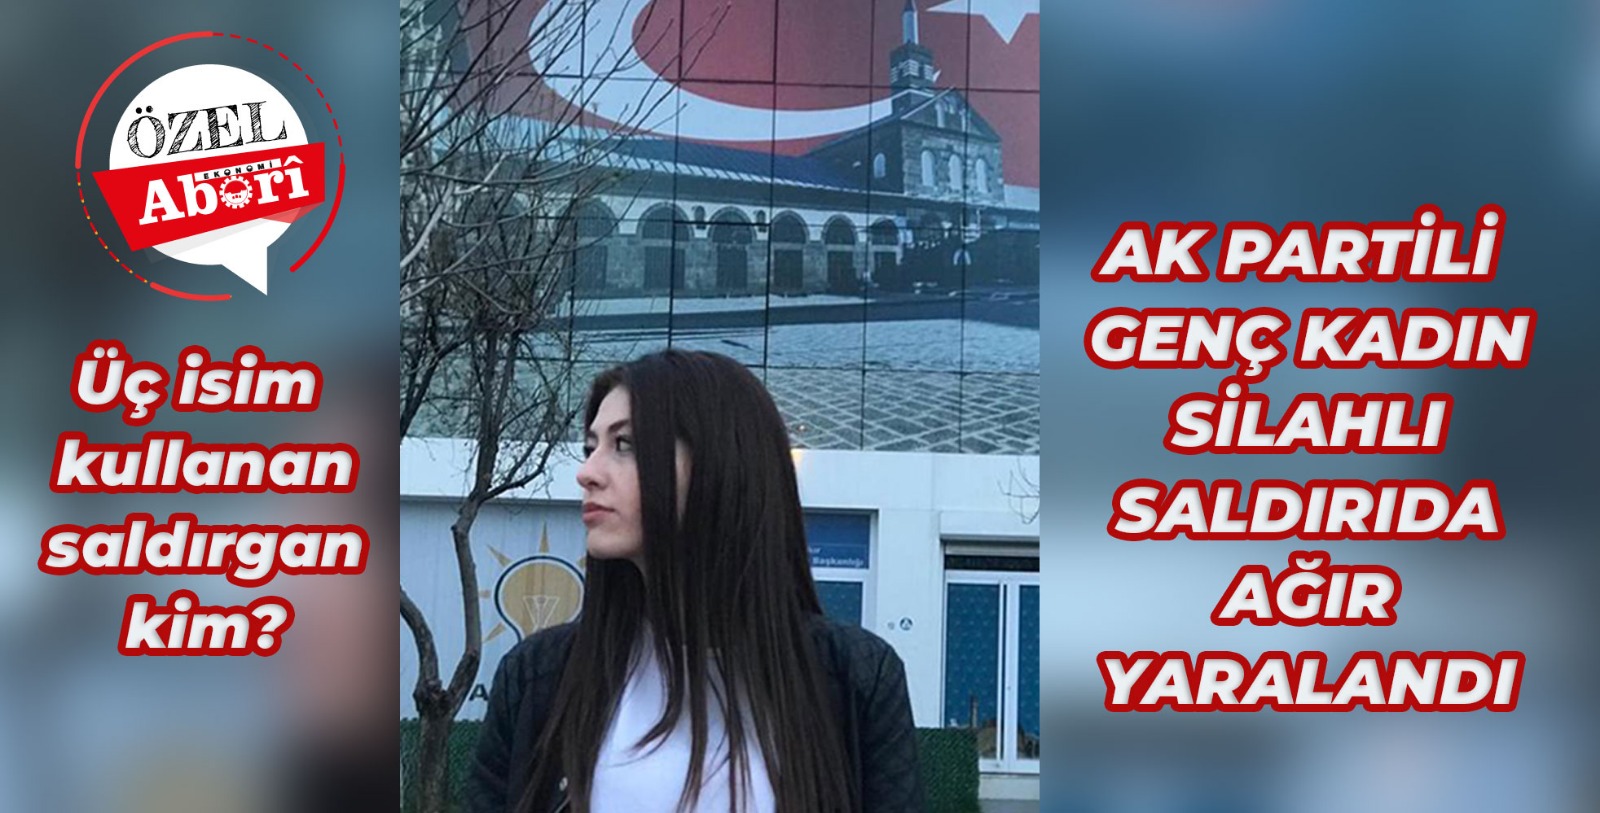 Diyarbakır’da AK Parti Kadın Komisyonu Başkanı silahlı saldırıda ağır yaralandı